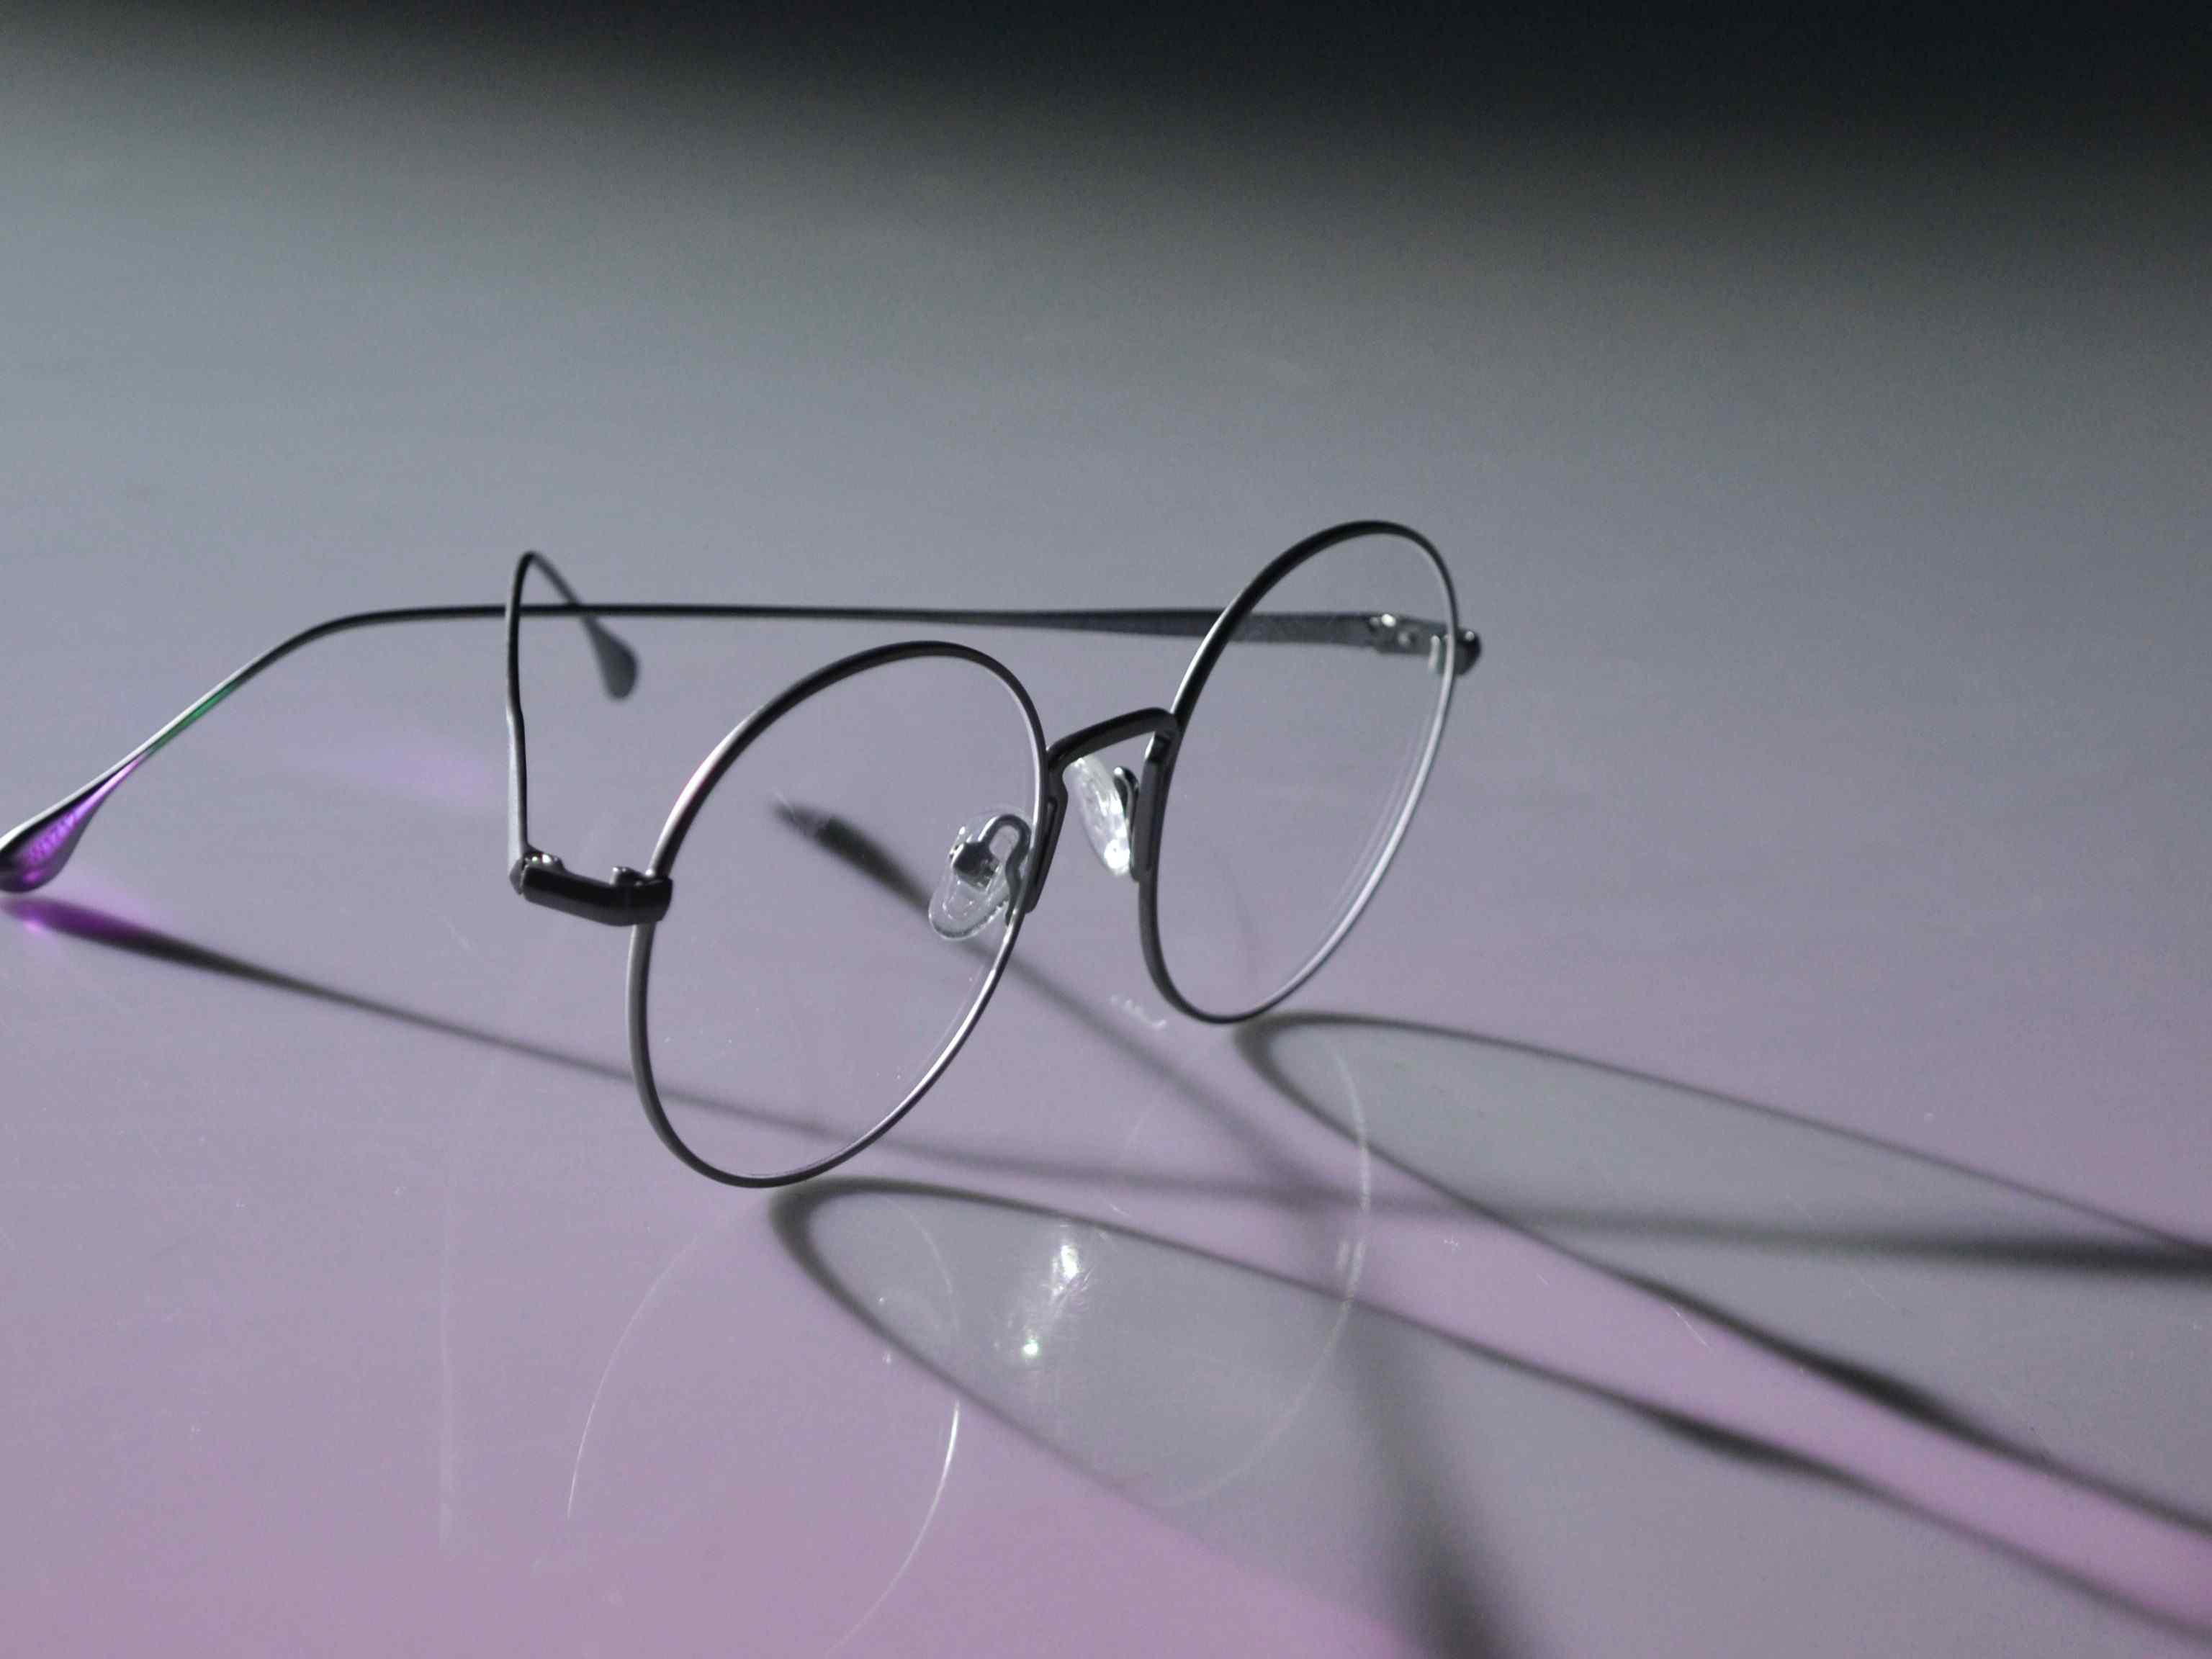 Frame kacamata bulat dan tipis cocok untuk wajah bulat. Kacamata dengan frame besi tipis cocok untuk wajah bulat.